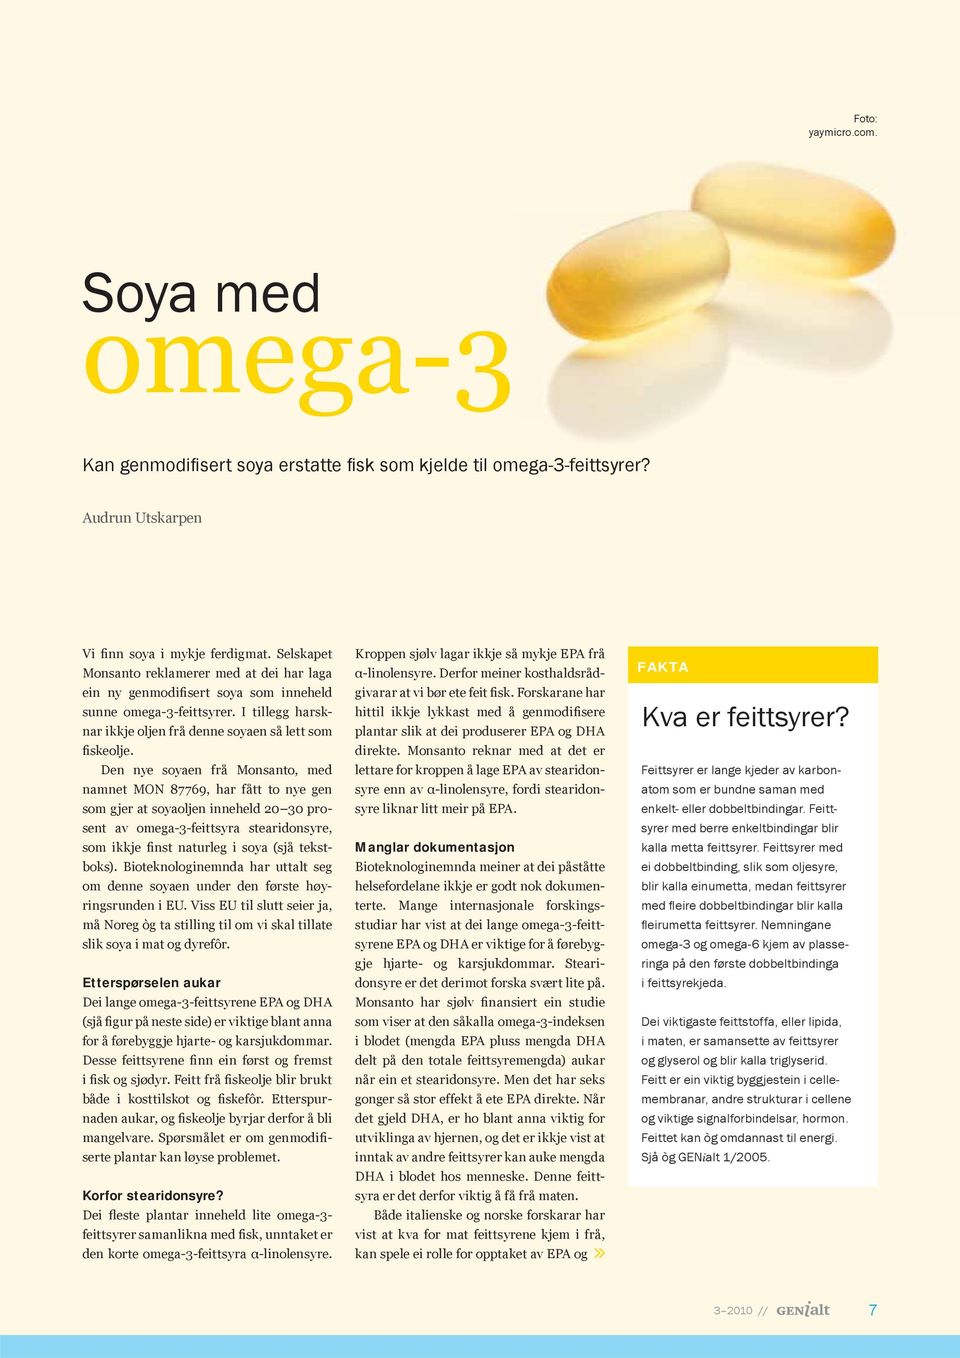 Den nye soyaen frå Monsanto, med namnet MON 87769, har fått to nye gen som gjer at soyaoljen inneheld 20 30 prosent av omega-3-feittsyra stearidonsyre, som ikkje finst naturleg i soya (sjå tekstboks).